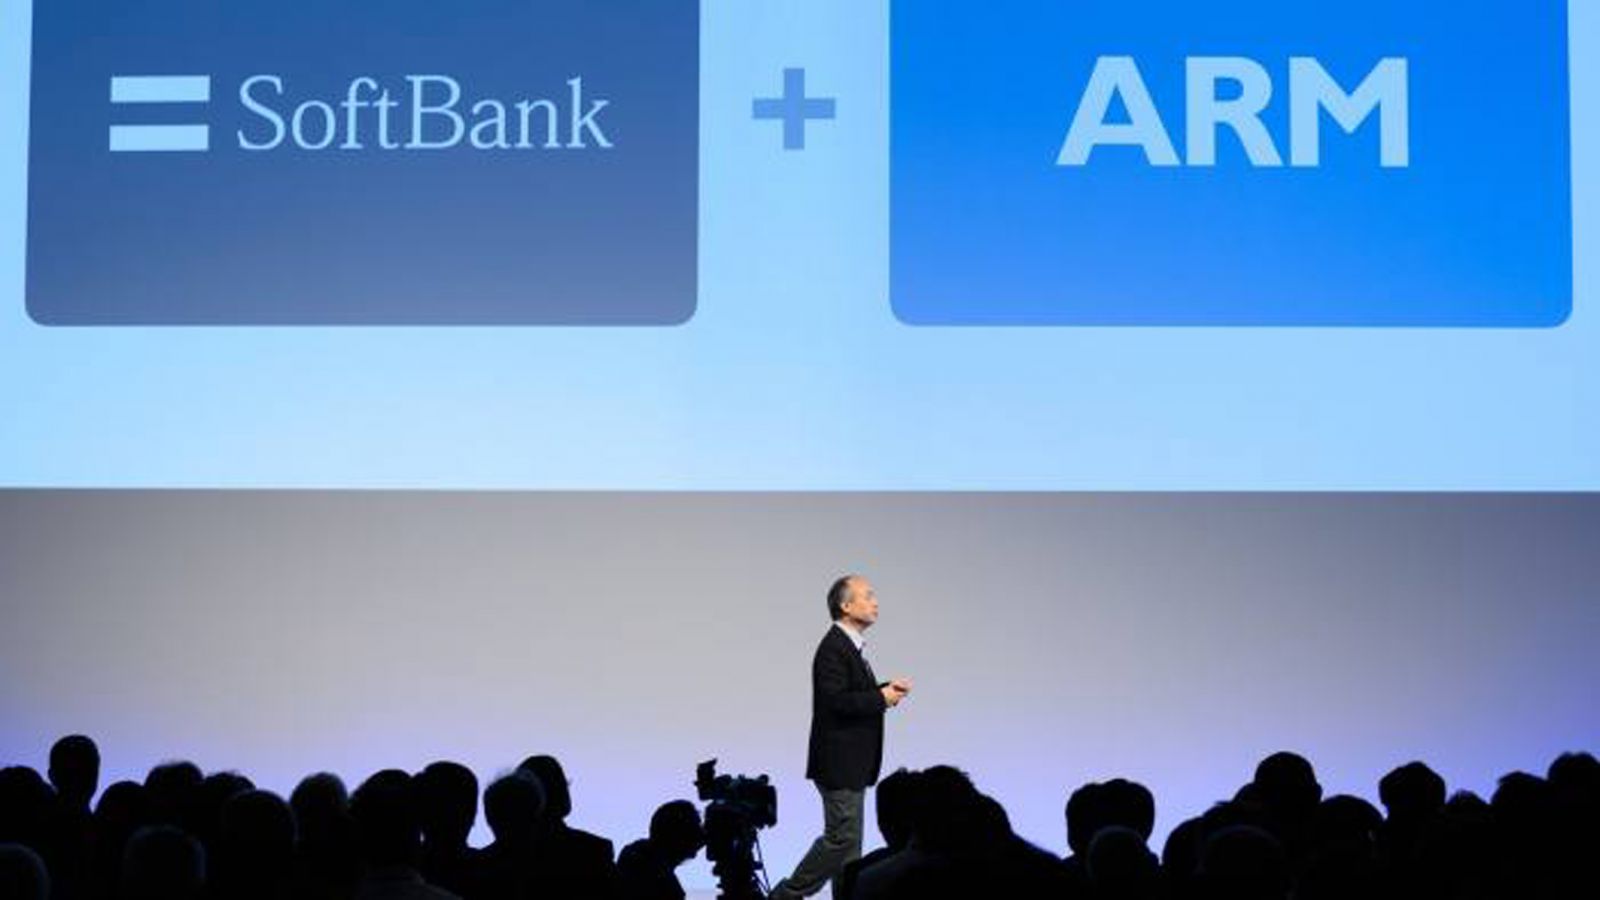  SoftBank bán ARM cho Nvidia sẽ giúp Mỹ “bá chủ” trong lĩnh vực sản xuất chip toàn cầu. (SoftBank từng mua công ty công nghệ của Anh 4 năm trước với giá 32 tỷ USD. Ảnh: Bloomberg)